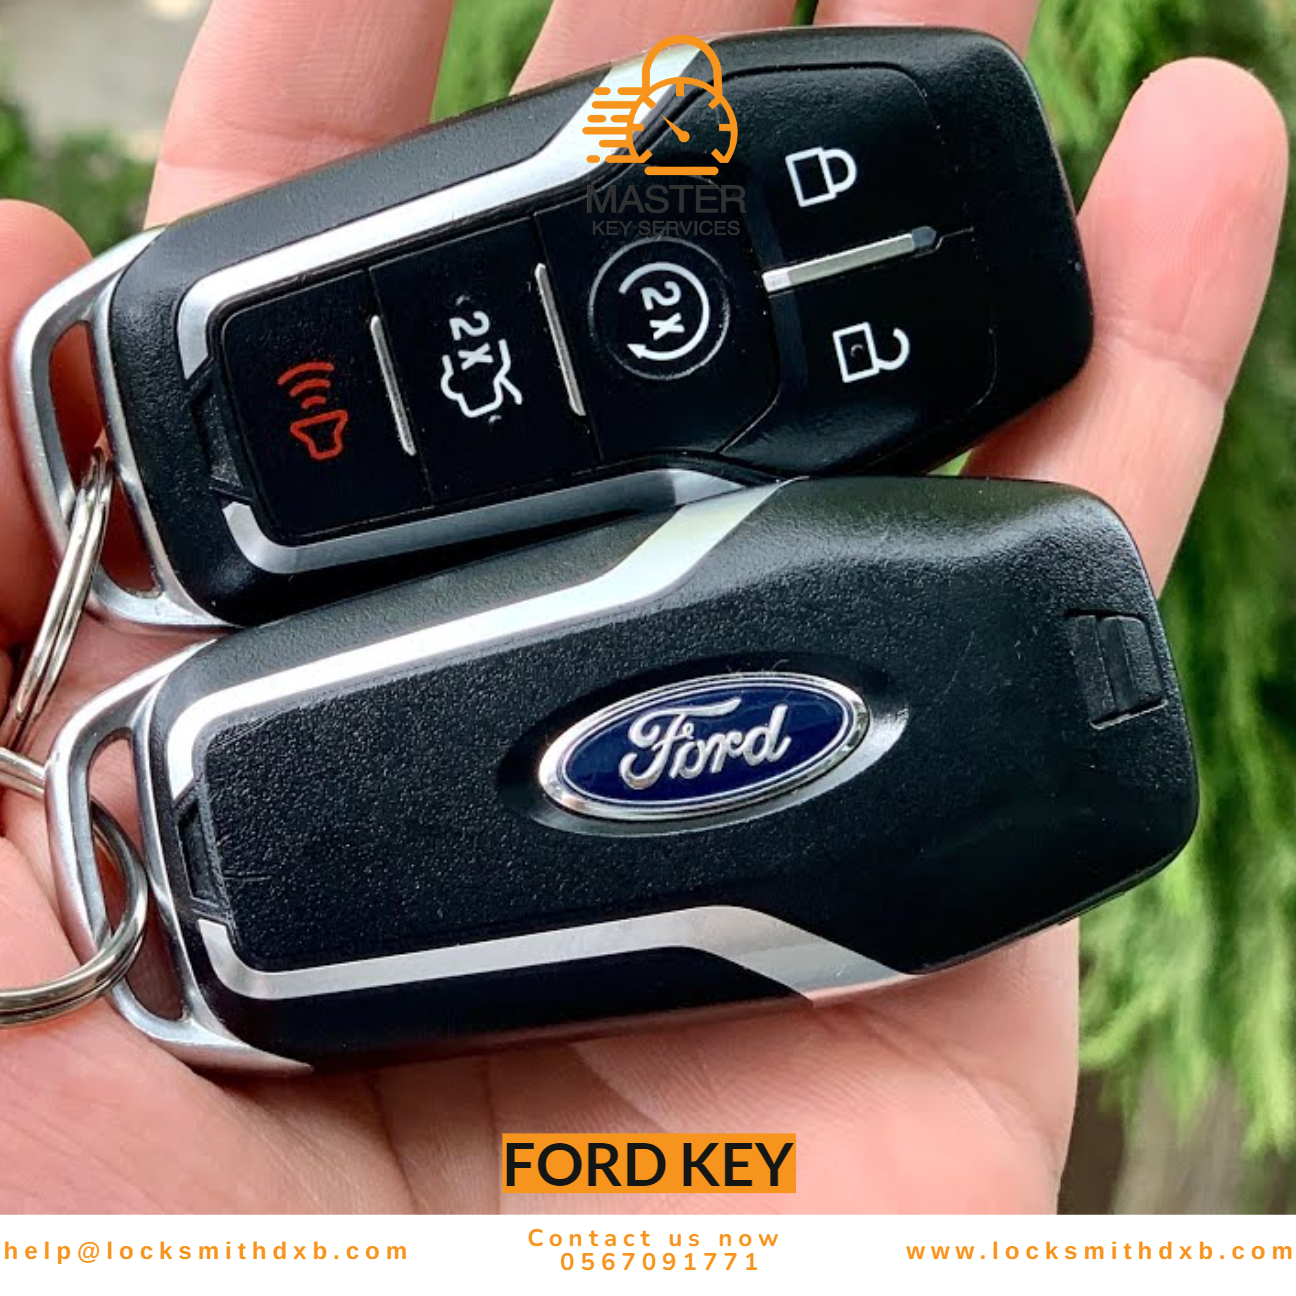 Ford key